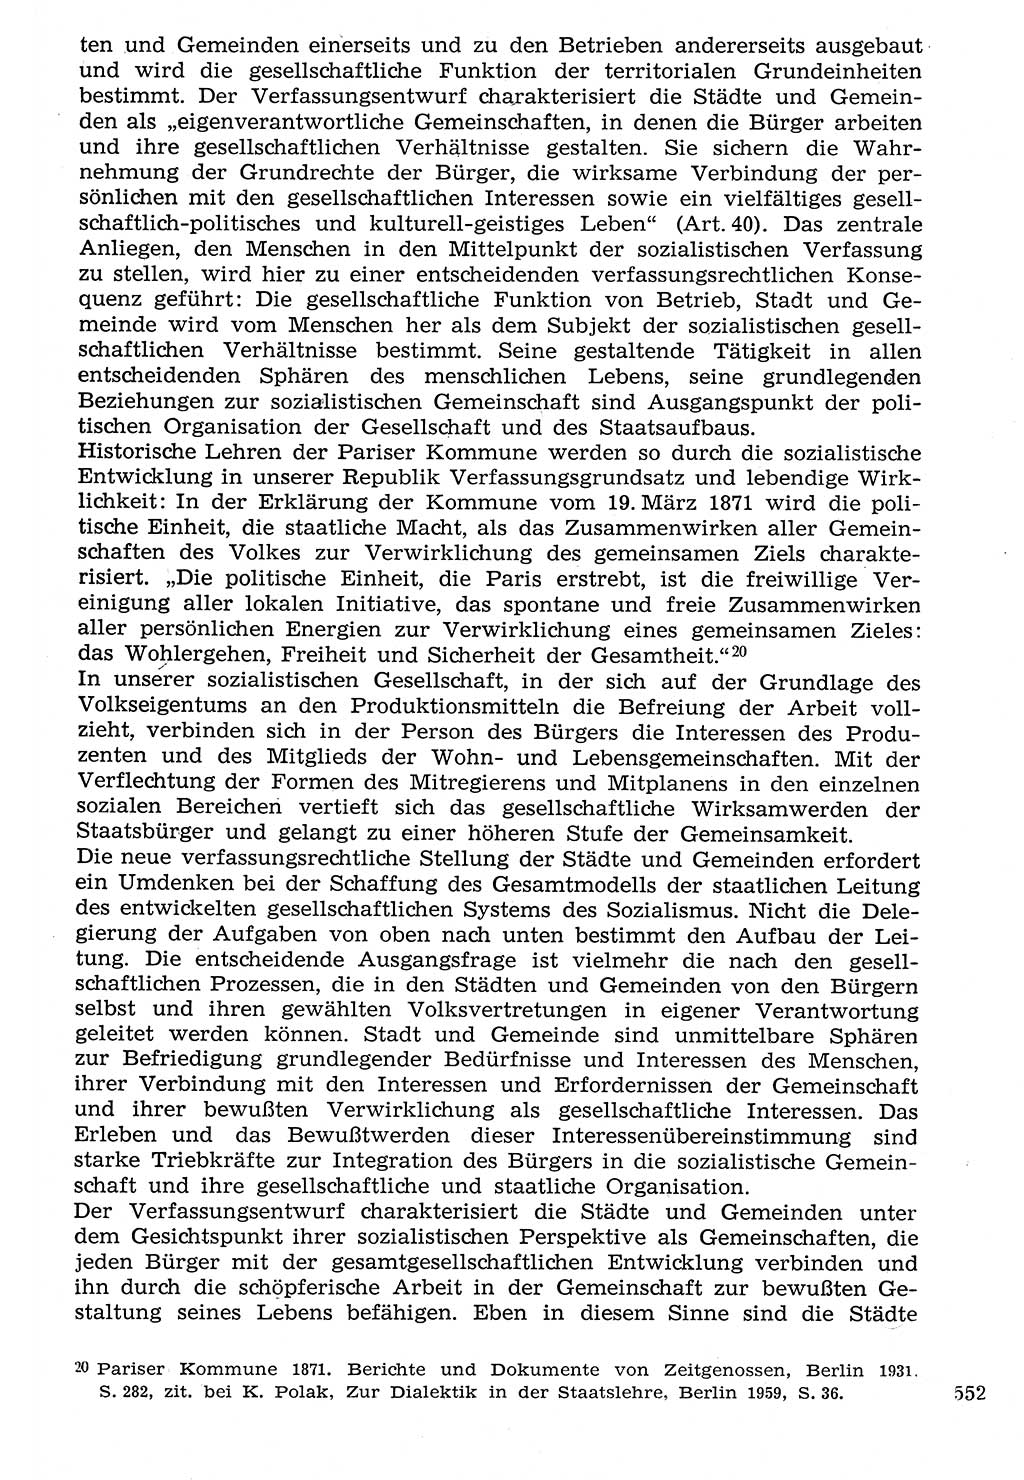 Staat und Recht (StuR), 17. Jahrgang [Deutsche Demokratische Republik (DDR)] 1968, Seite 552 (StuR DDR 1968, S. 552)